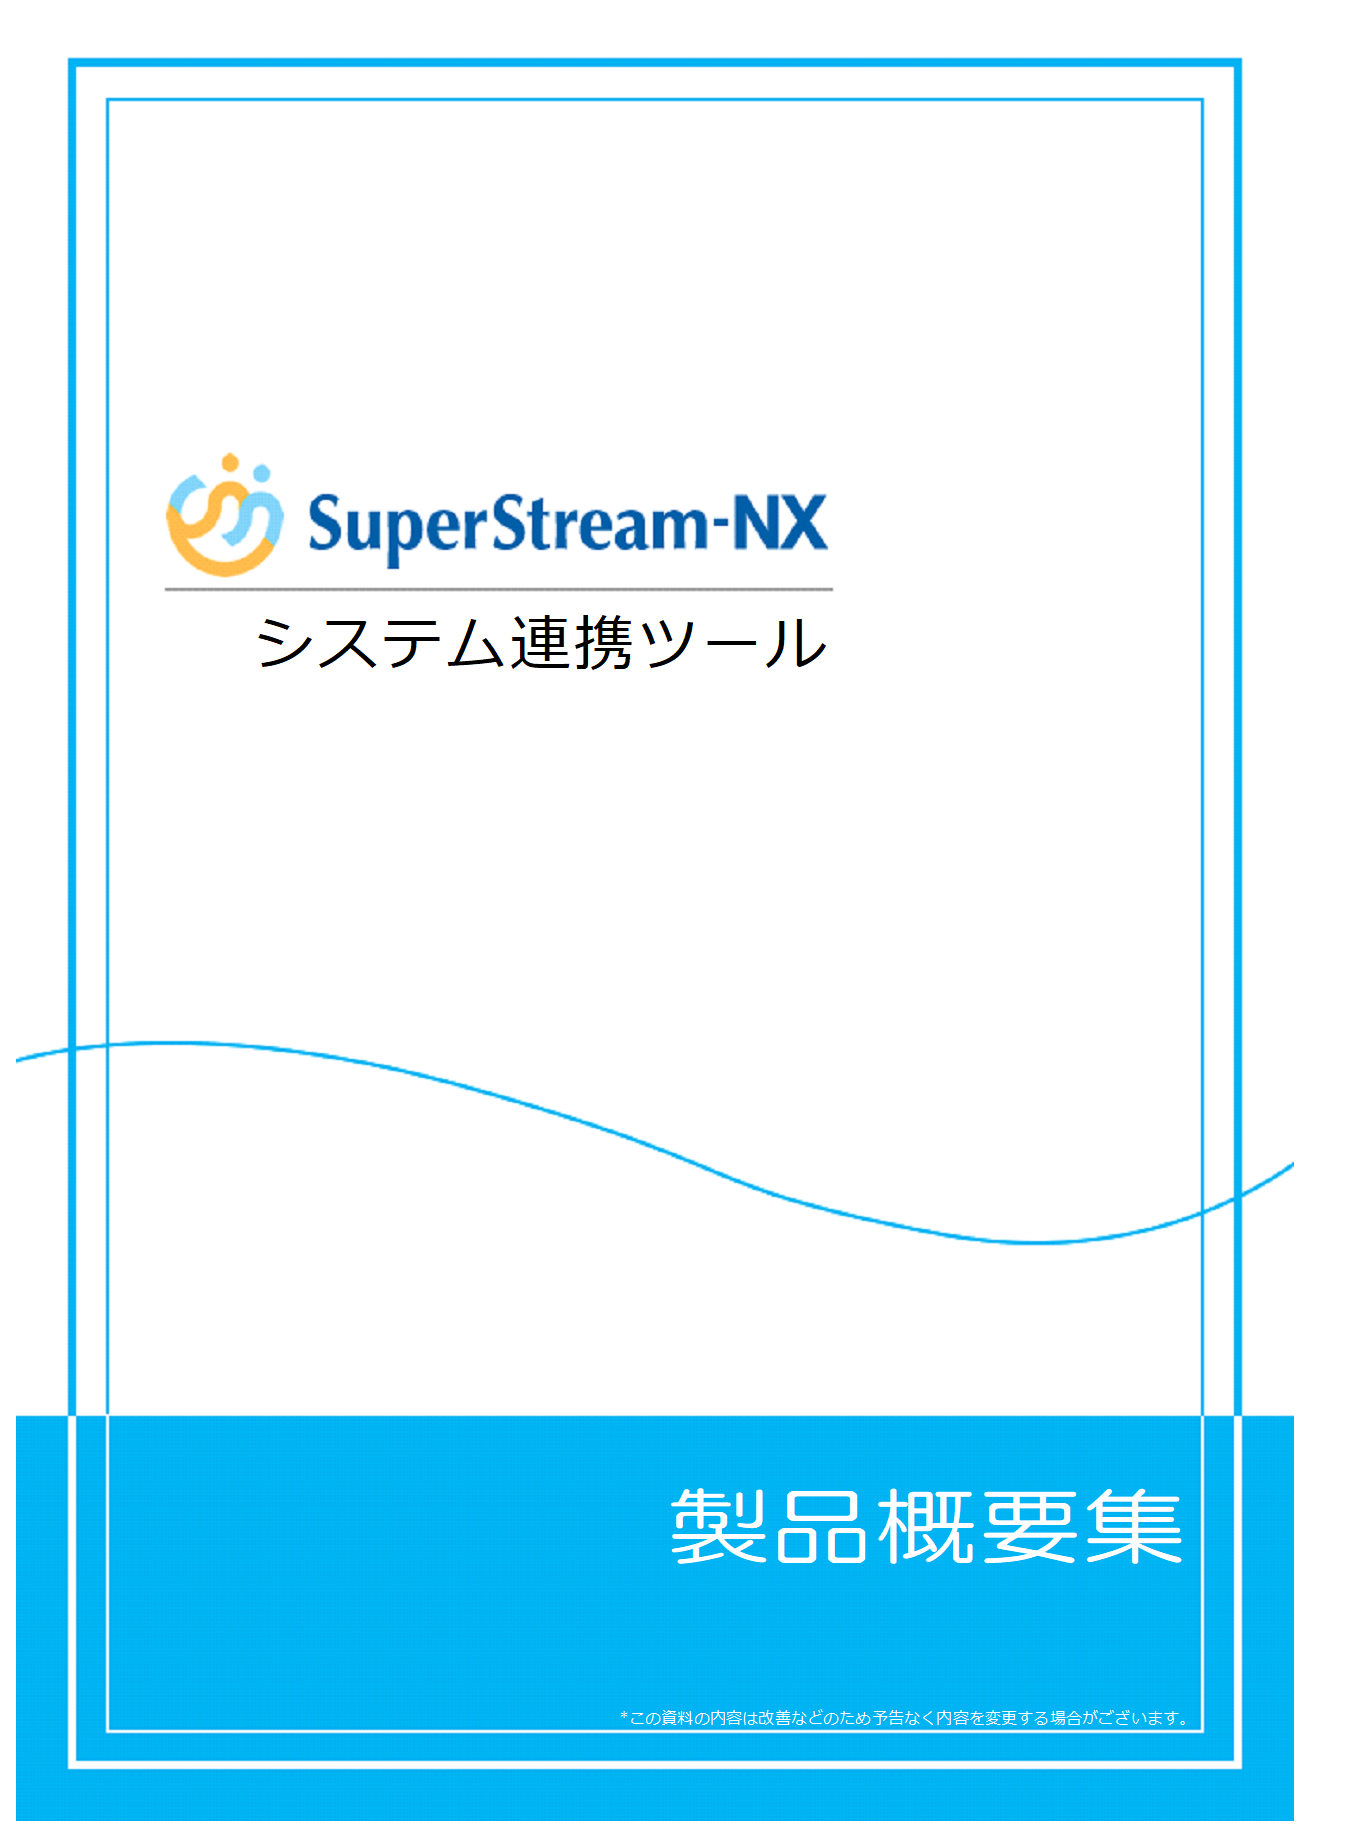 SuperStream-NX システム連携ツール製品概要集